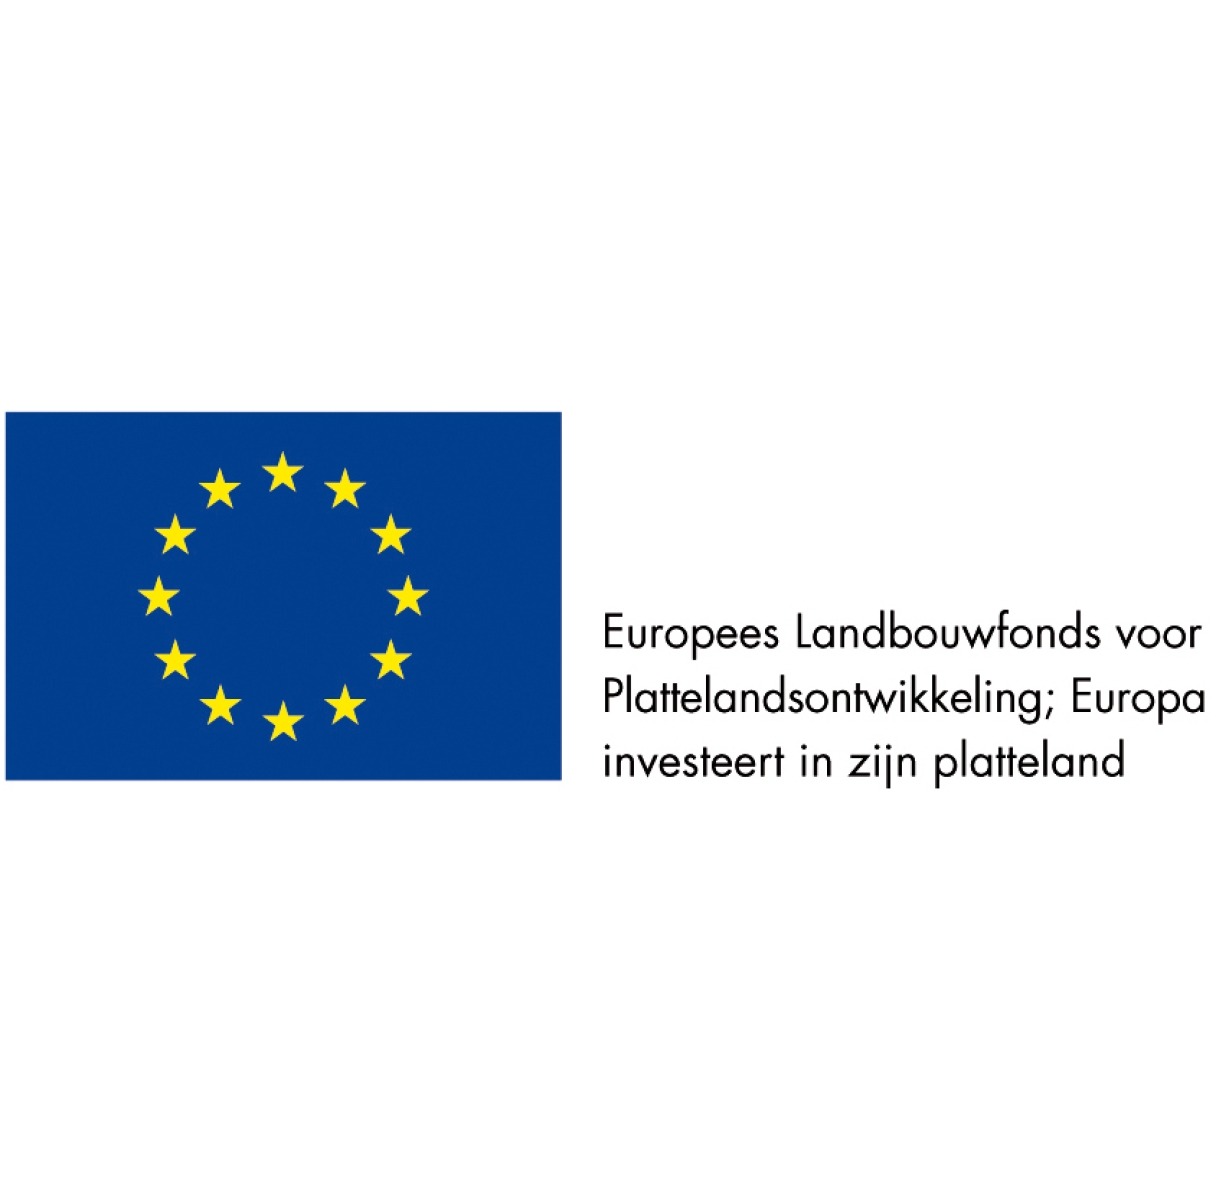 Europees Landbouwfonds voor Plattelandsontwikkeling; Europa investeert in zijn platteland 